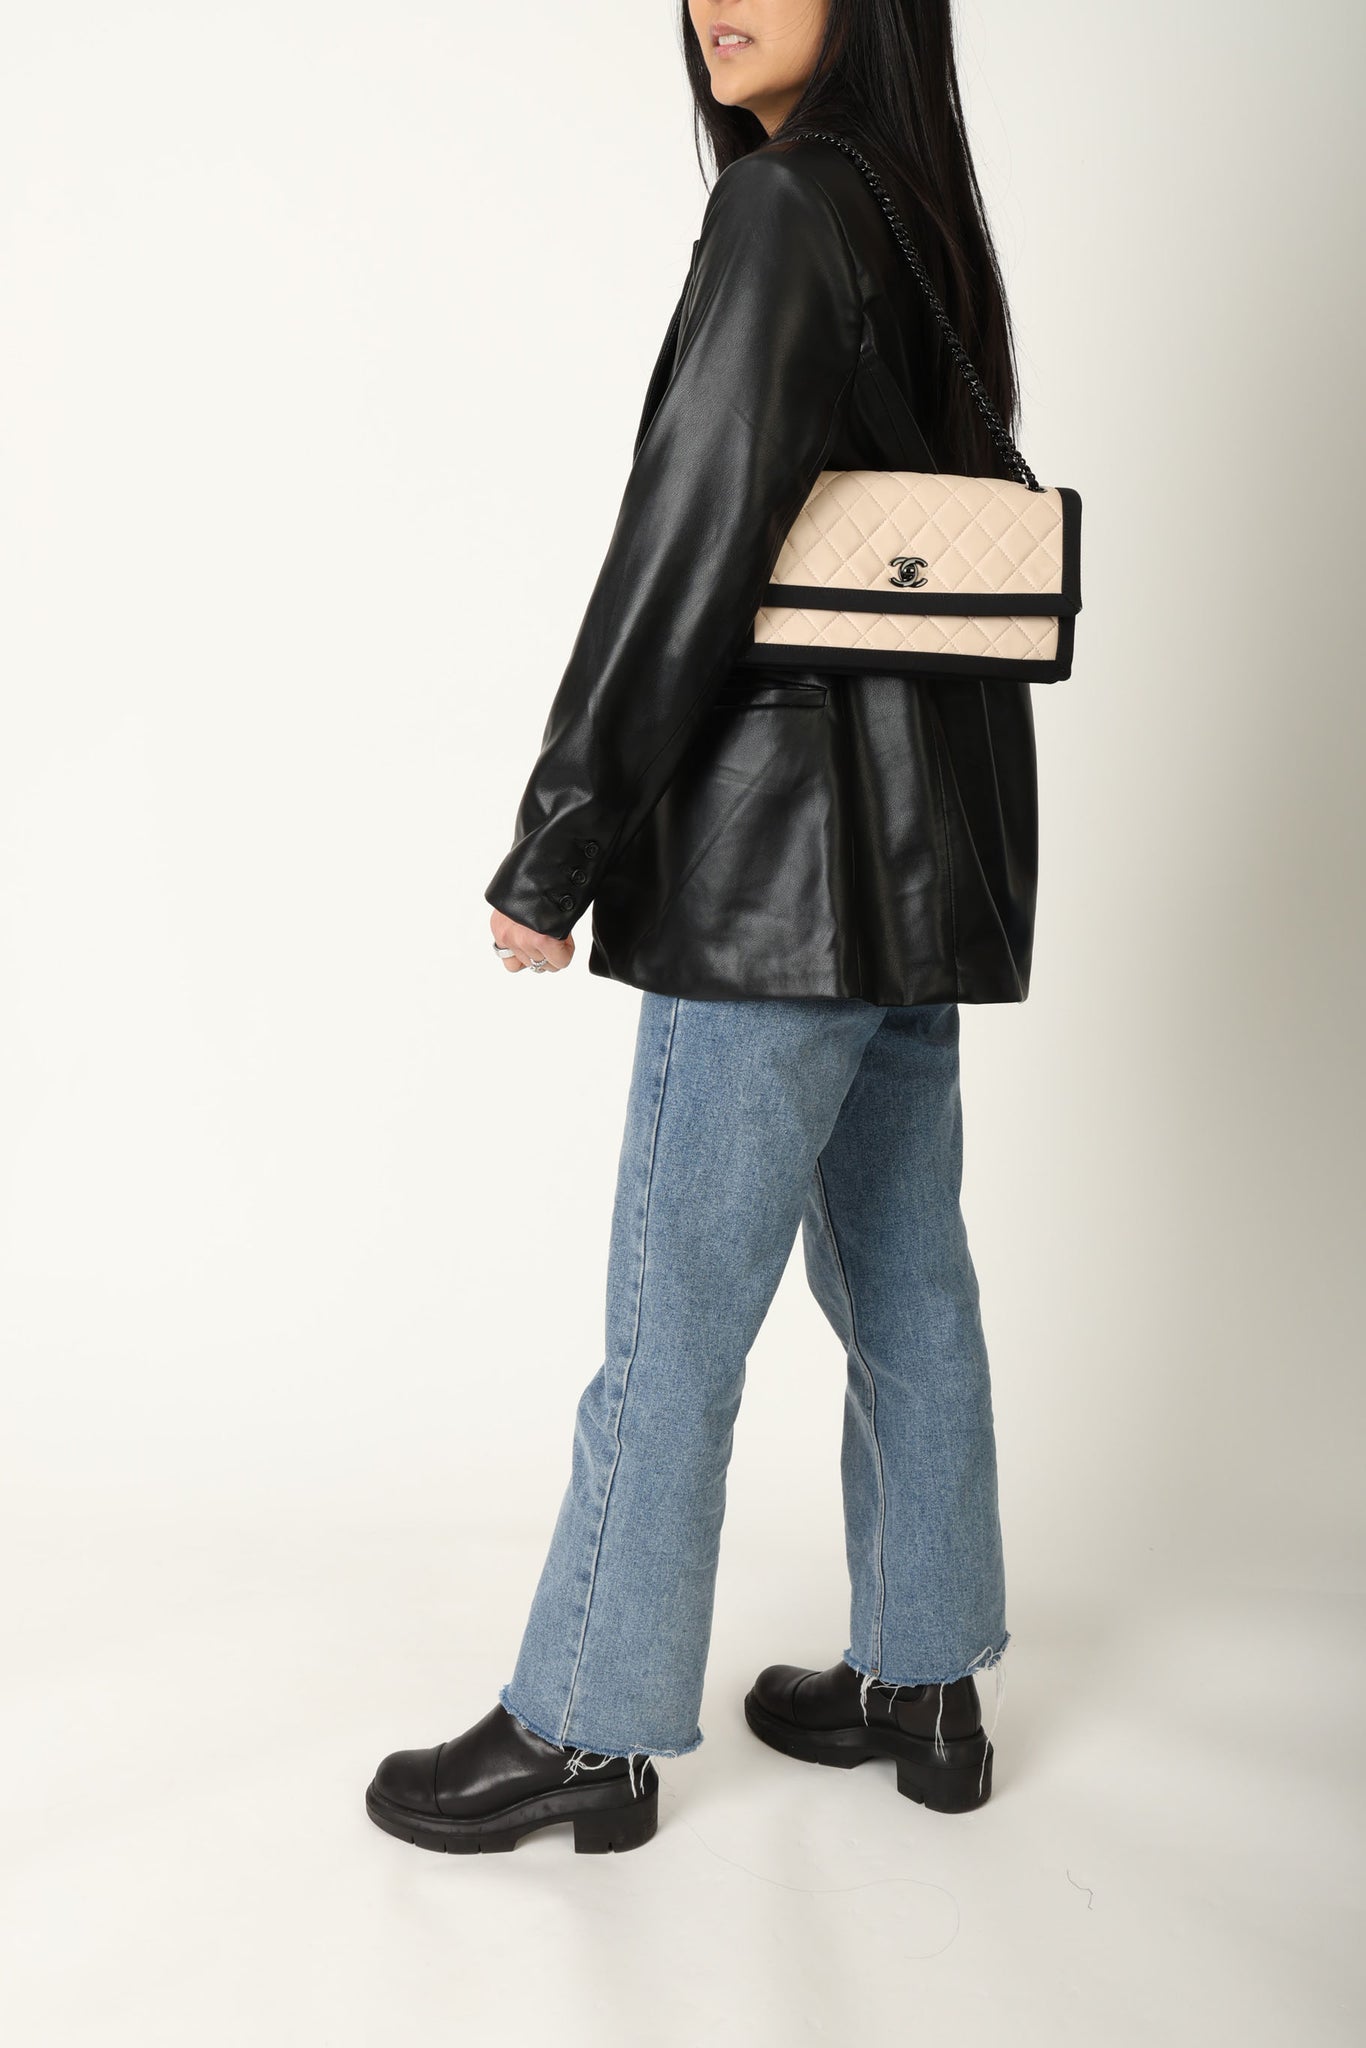 Chanel 2015 Lambskin Grosgrain Flap Bag